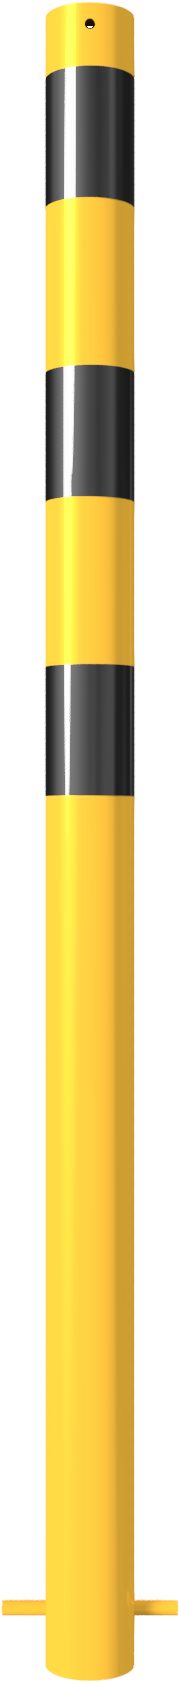 Modellbeispiel: Stahlrohrpoller/Rammschutzpoller (Art. 476bg)